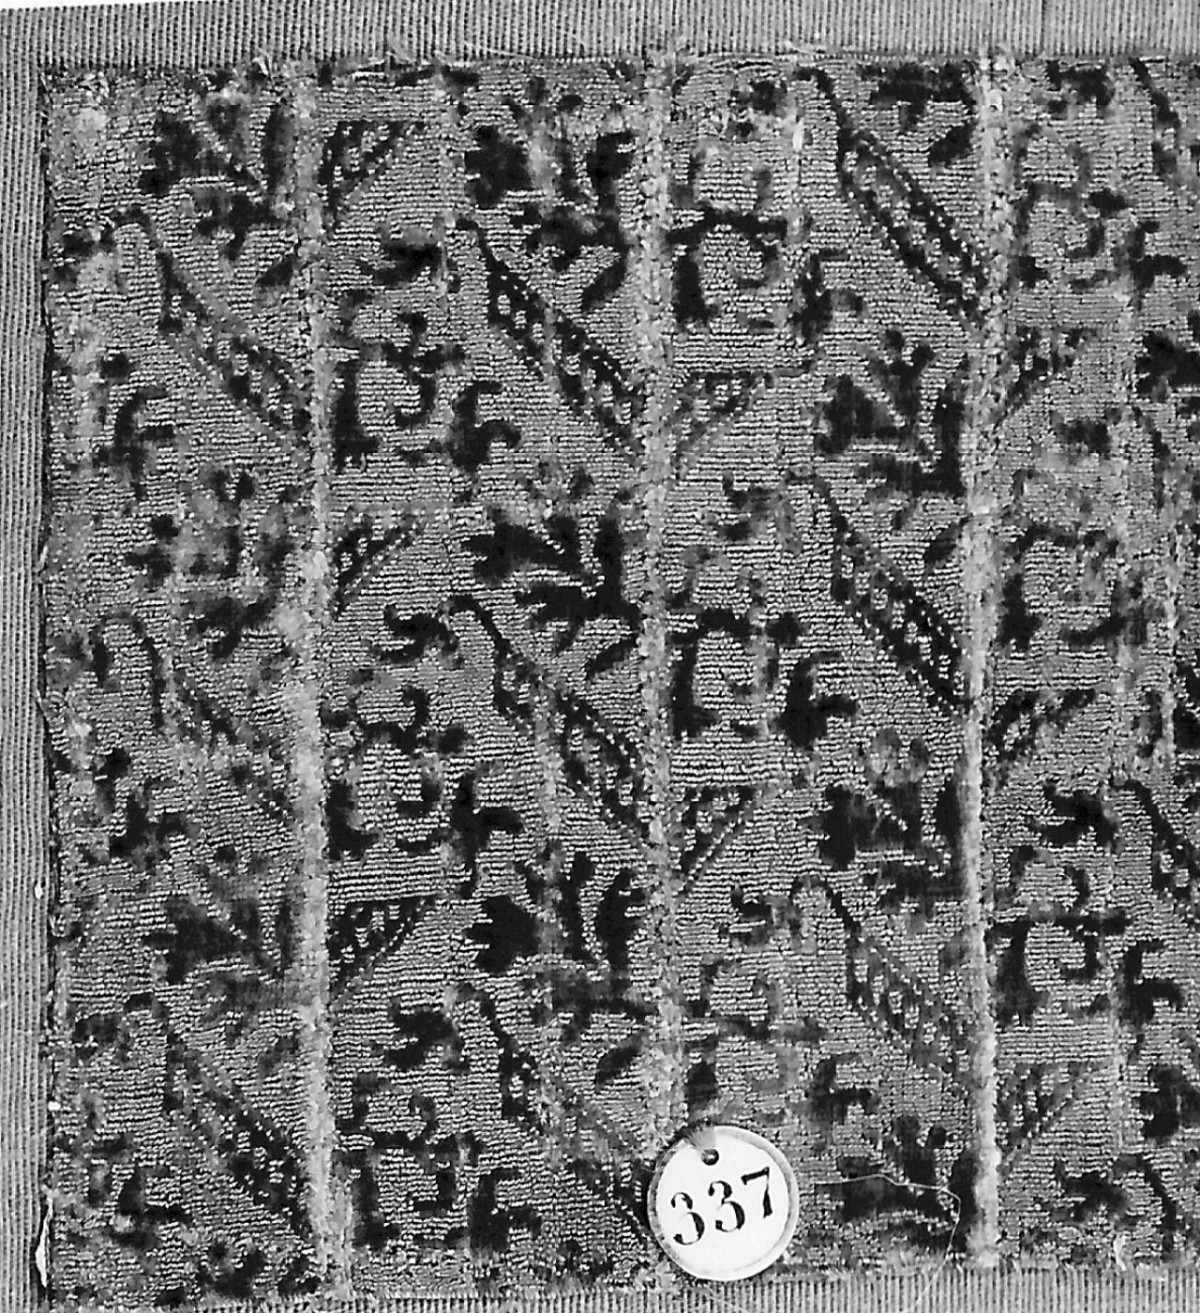 motivi decorativi geometrici e vegetali stilizzati (tessuto, frammento) - manifattura italiana (sec. XVII)